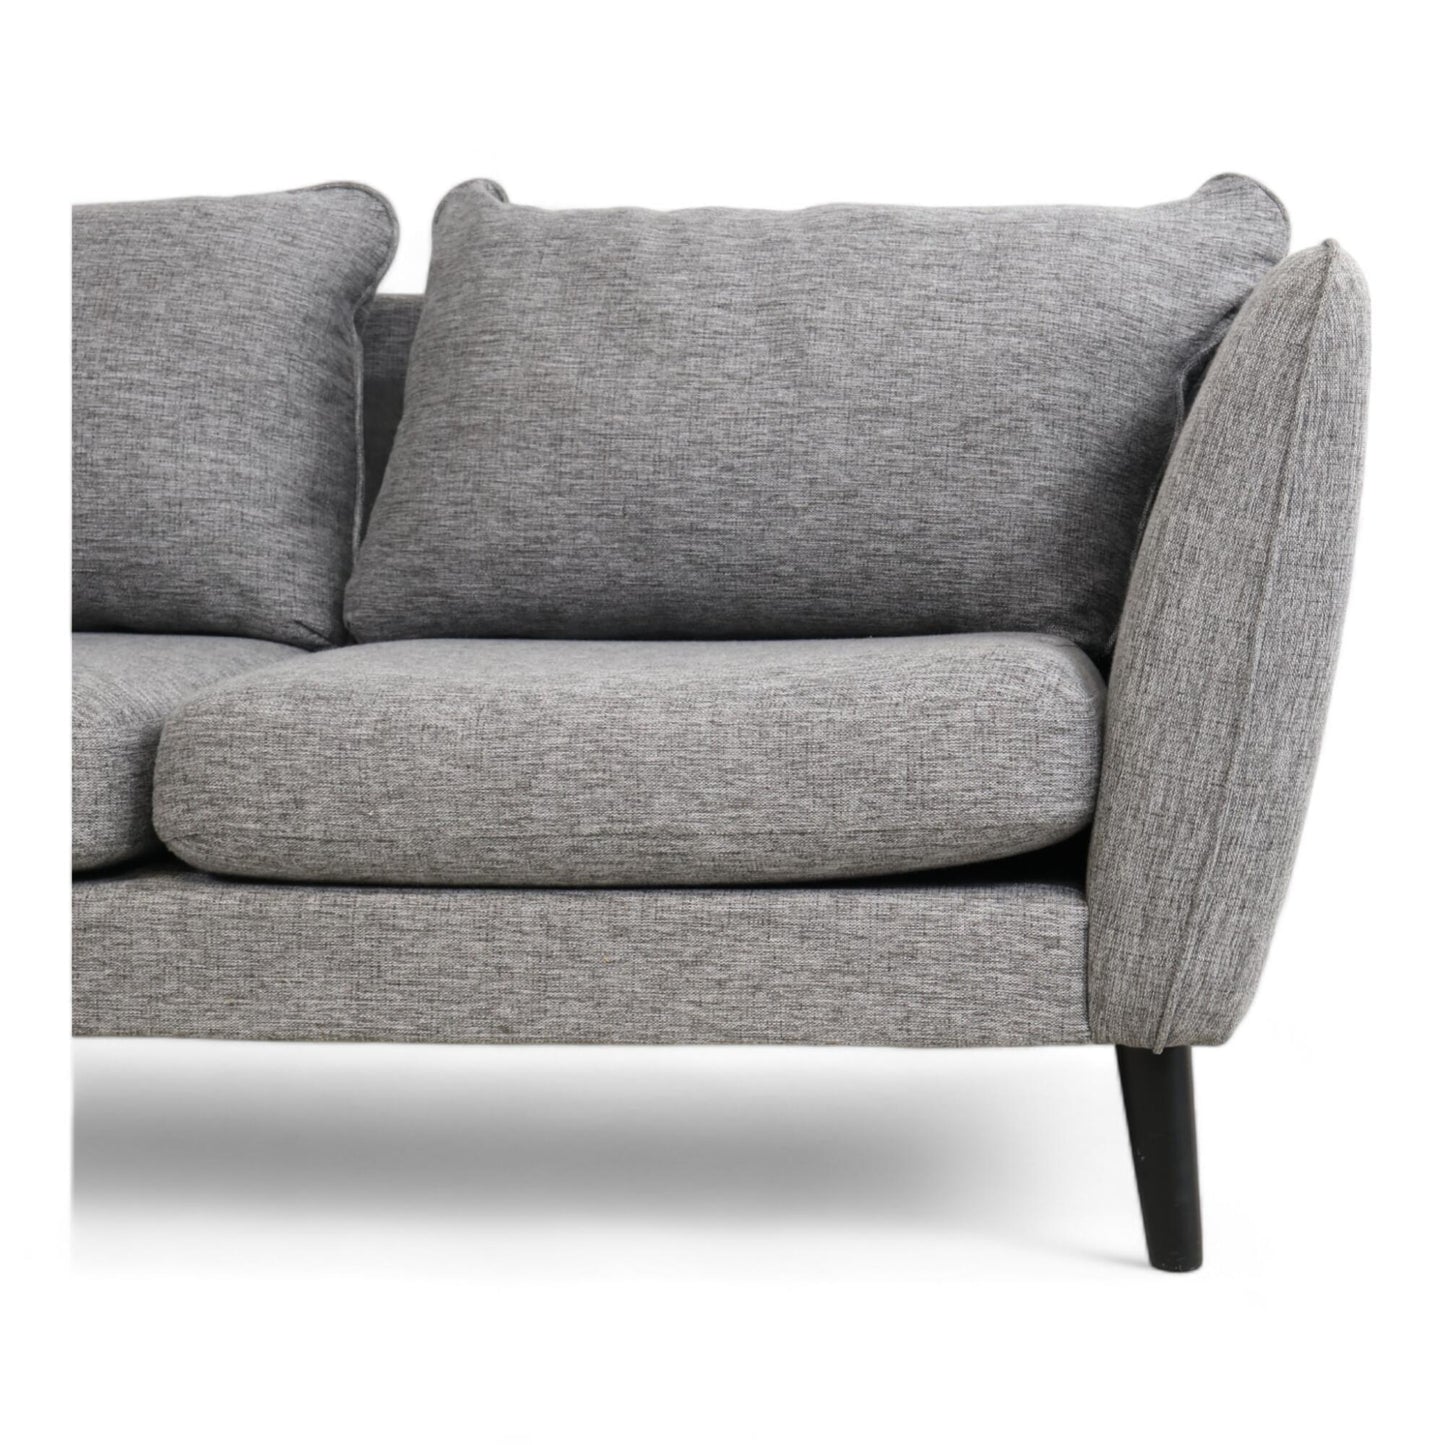 Nyrenset | Lys grå 2-seter sofa med avtagbare putetrekk